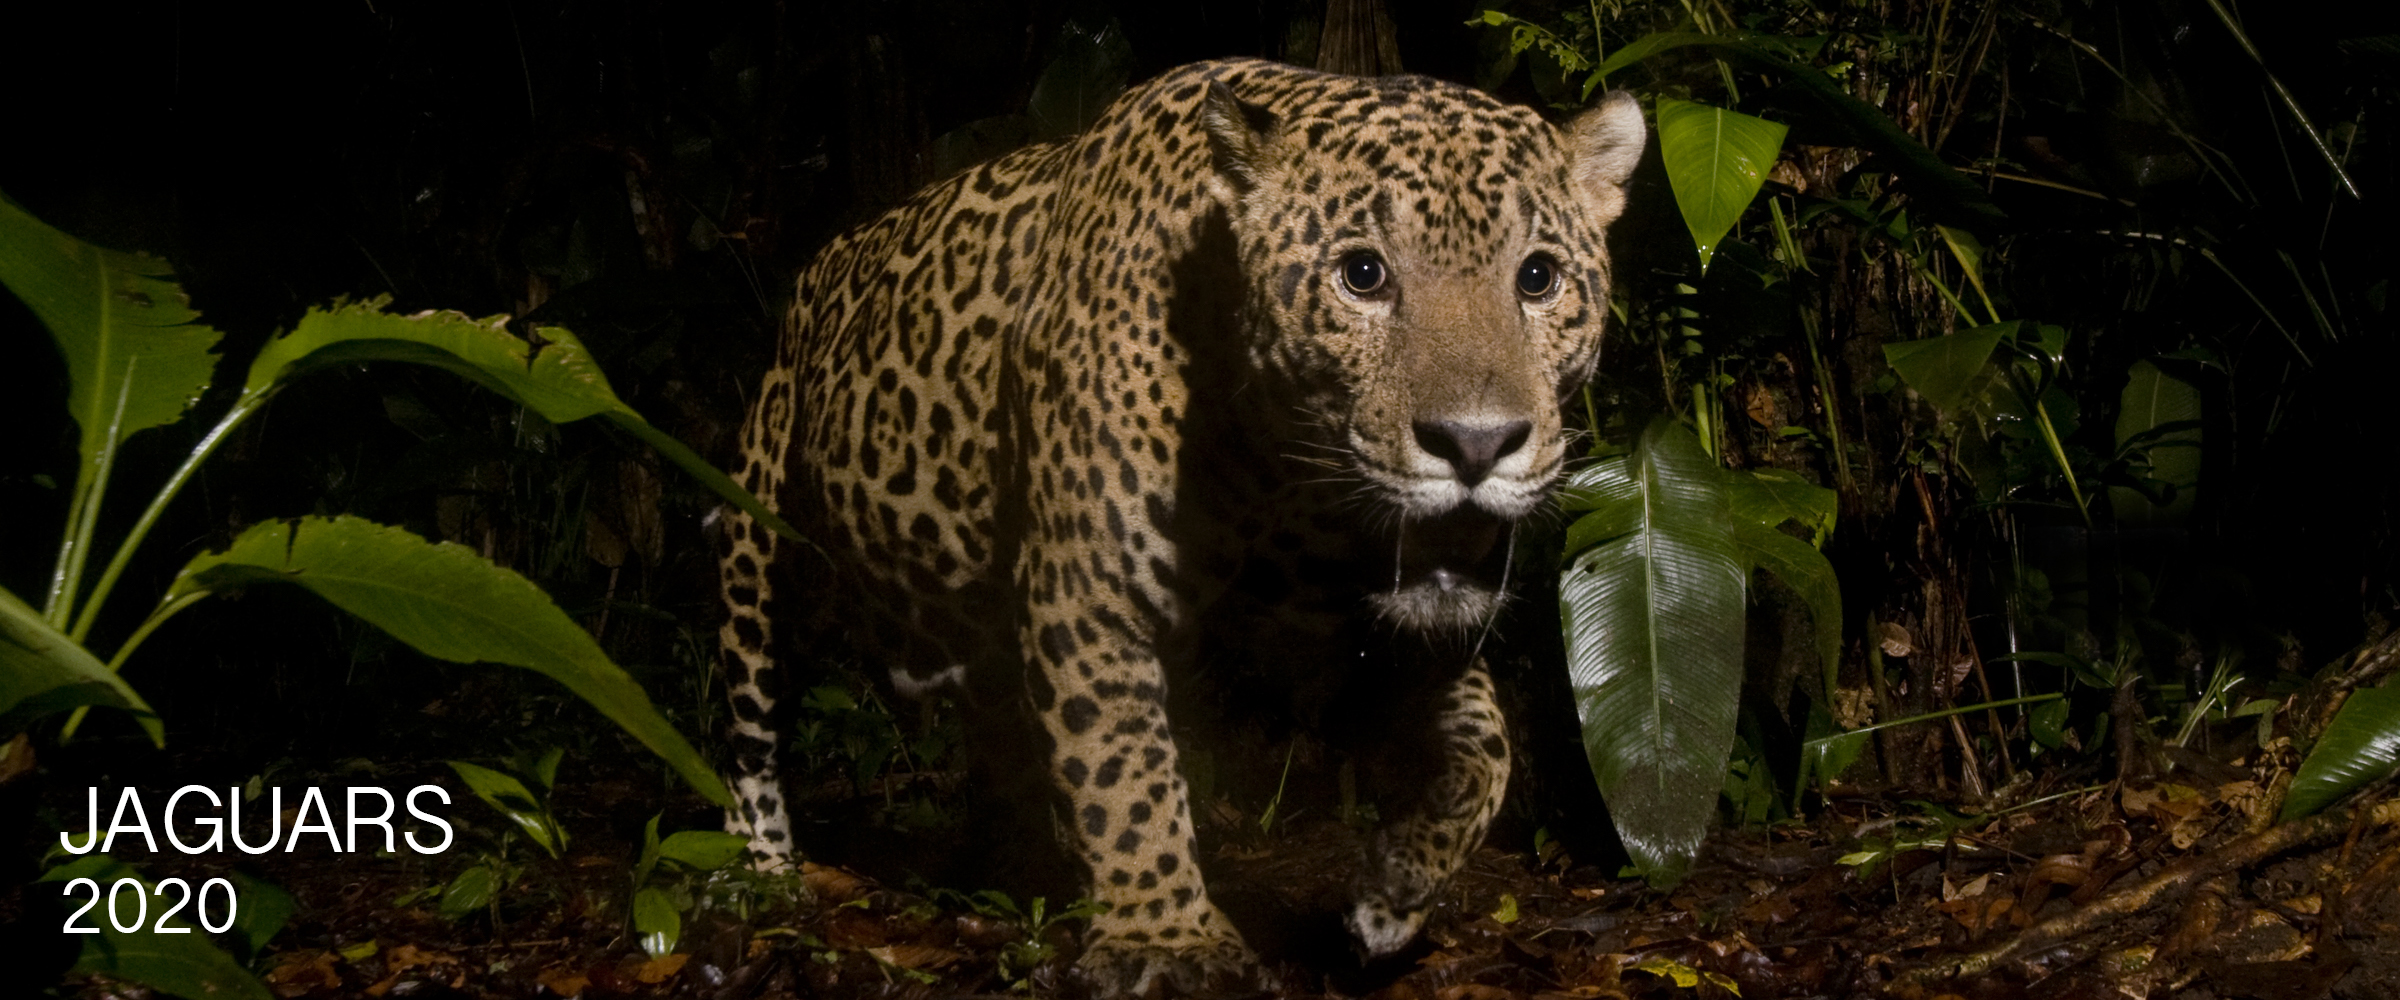 jaguar photo tours